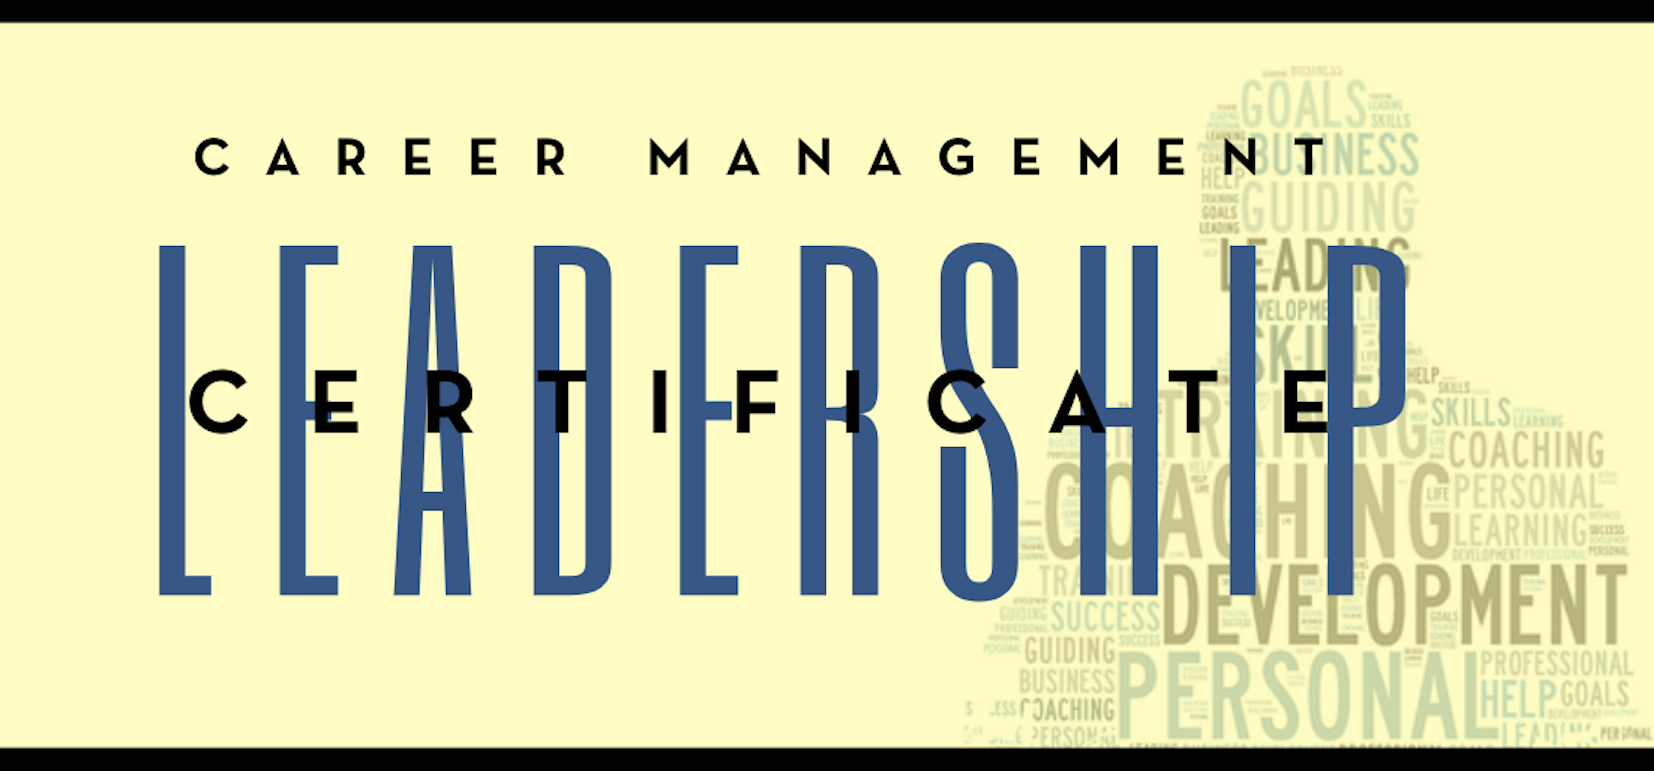 Career Management Leadership Certificate